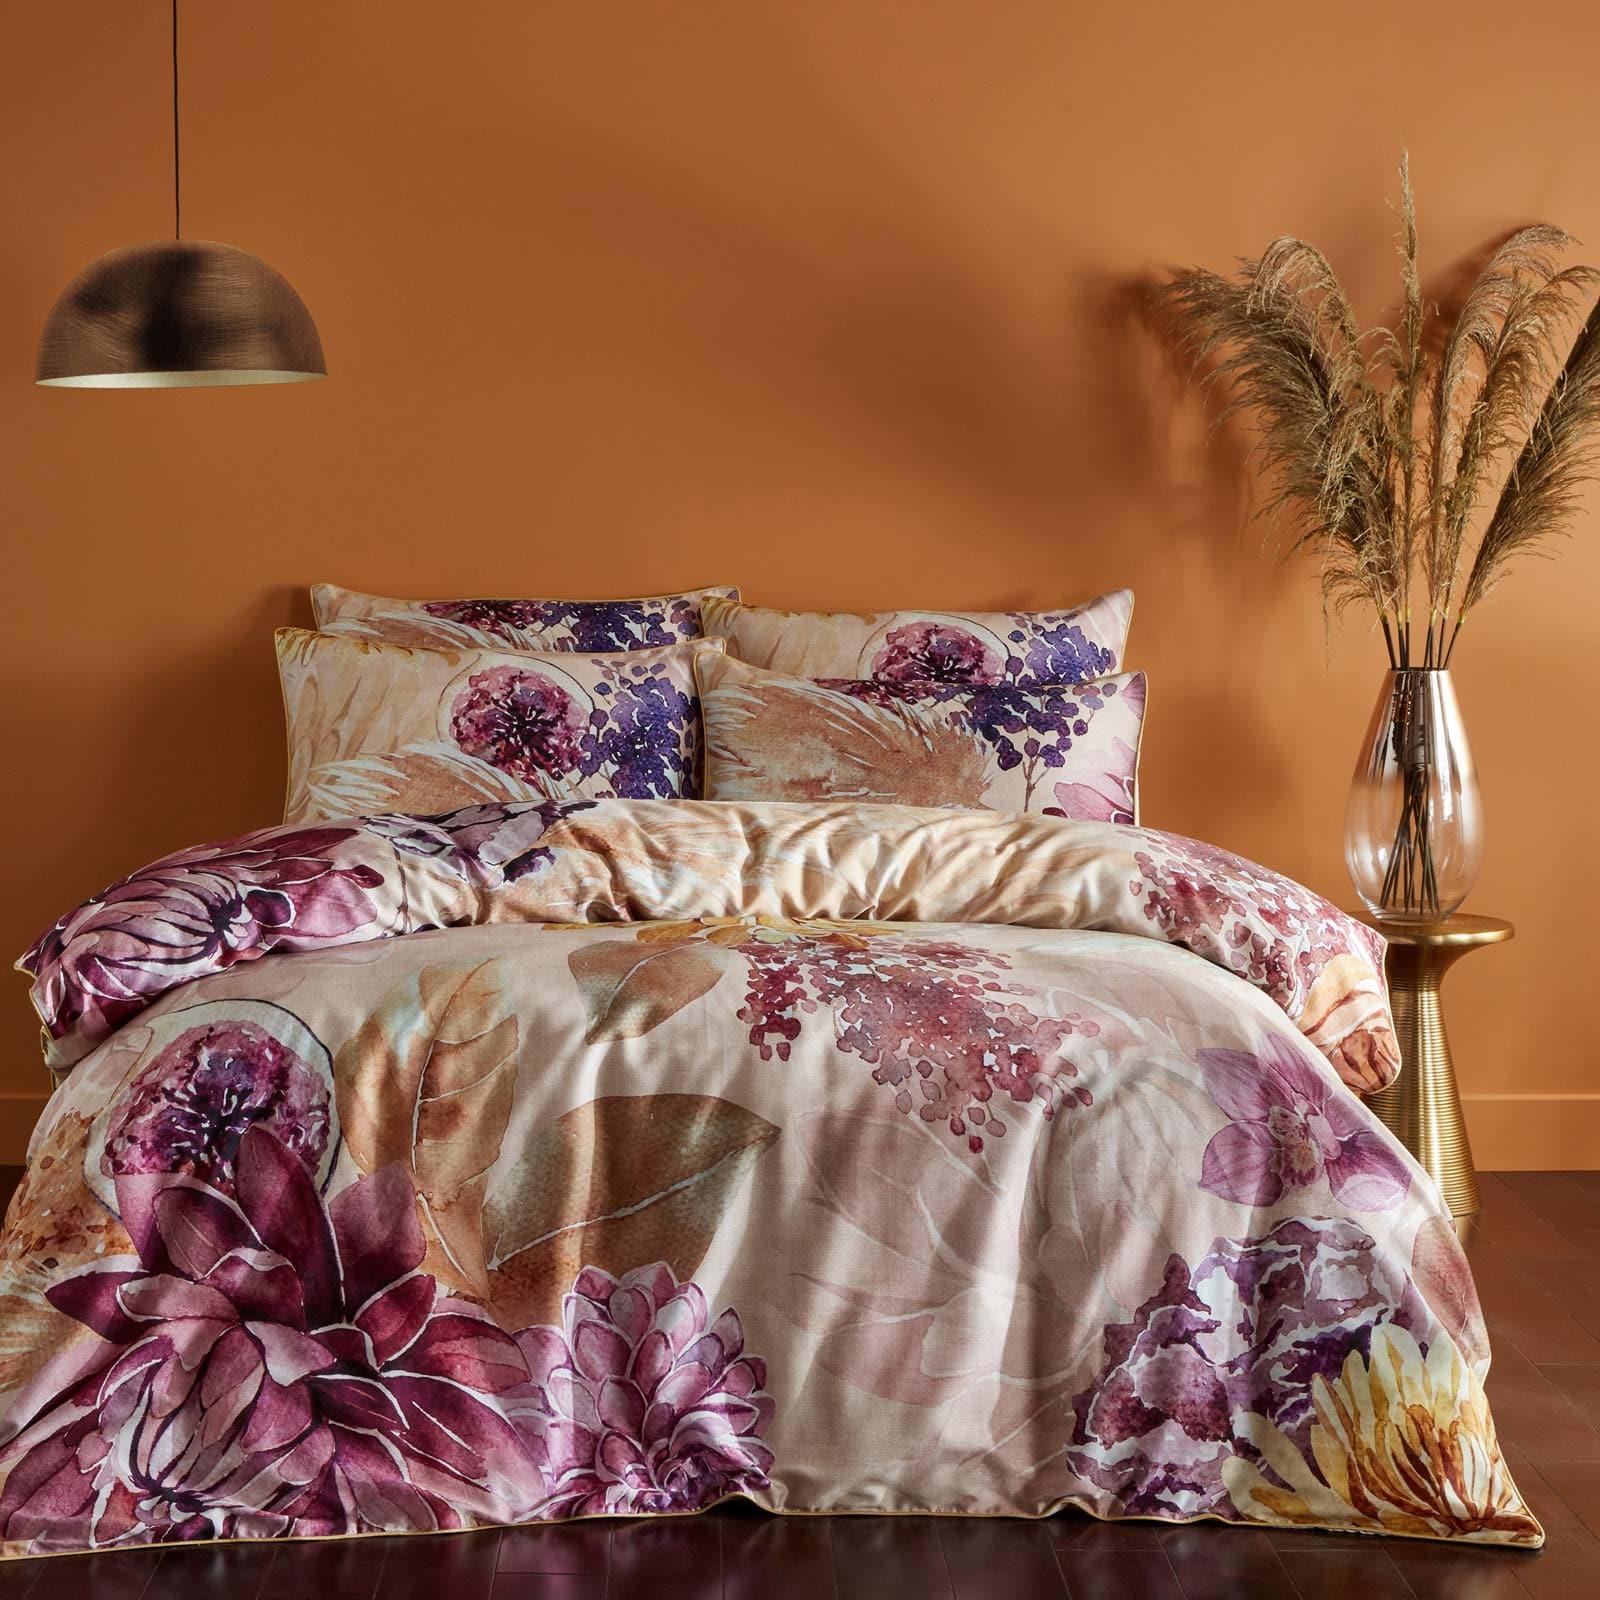 Saffa Floral Cotton Duvet Cover Set – Ideal